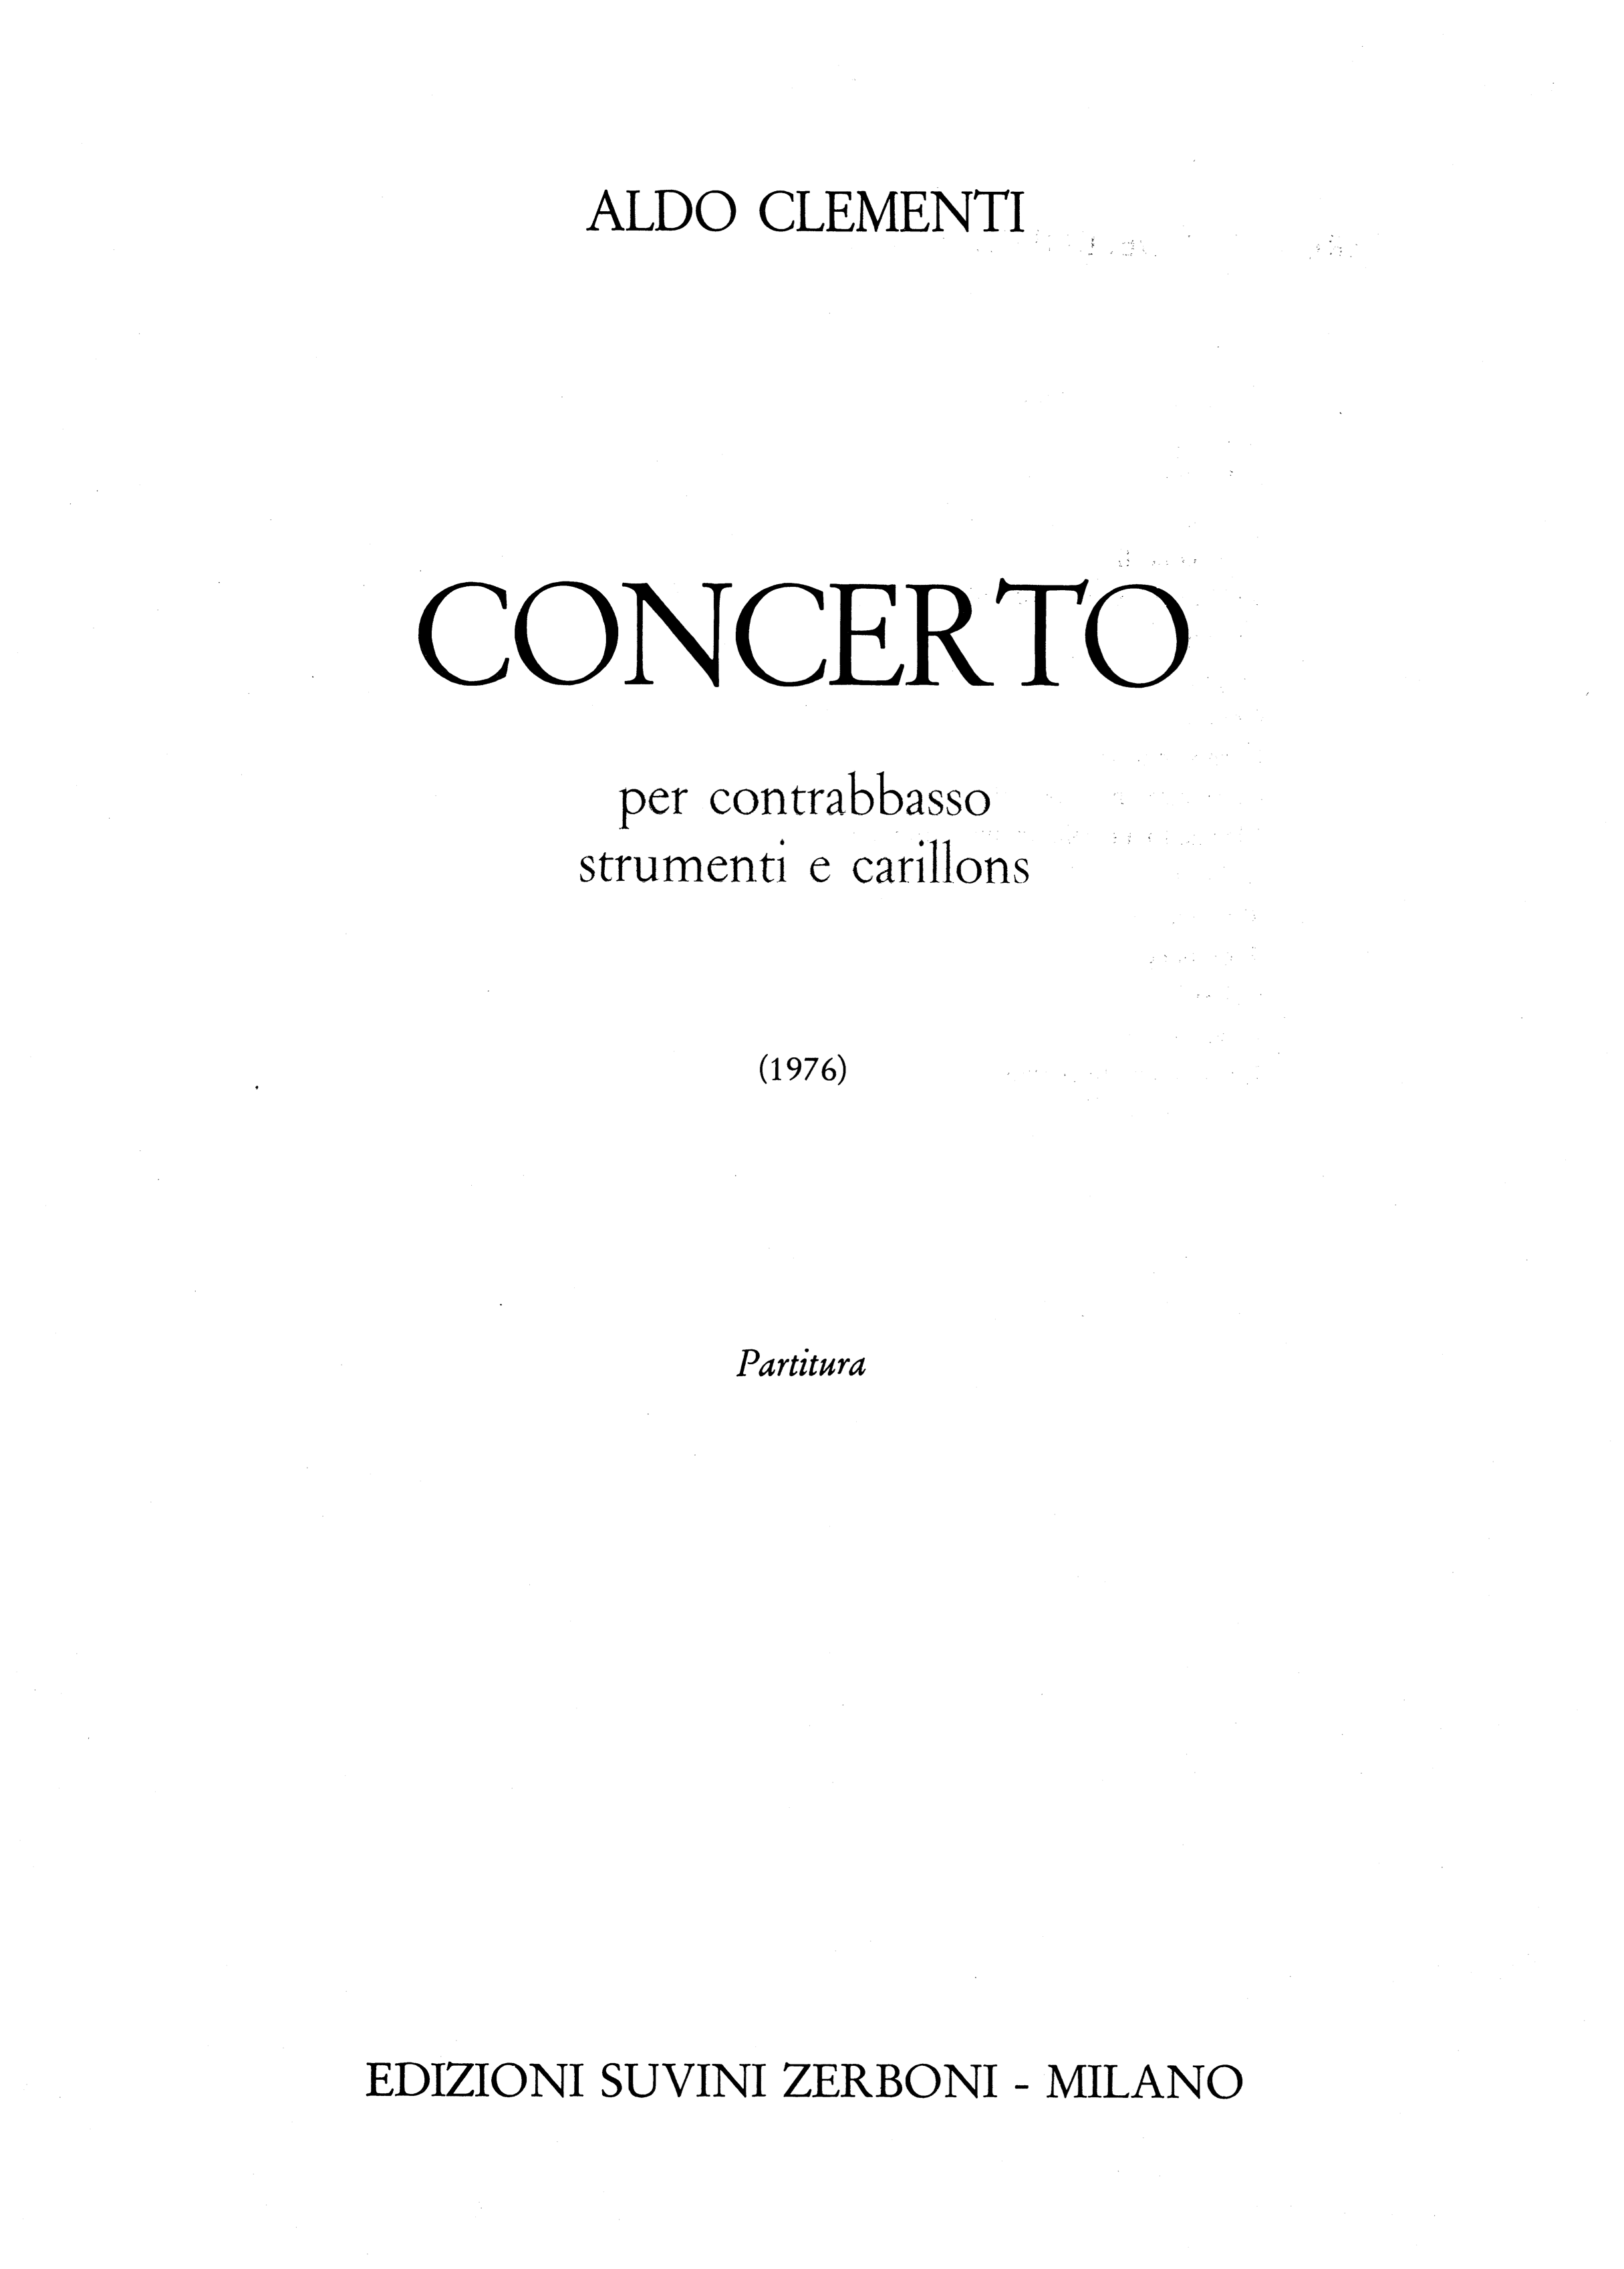 Concerto per contrabbasso strumenti e carillons_Clementi Aldo 1